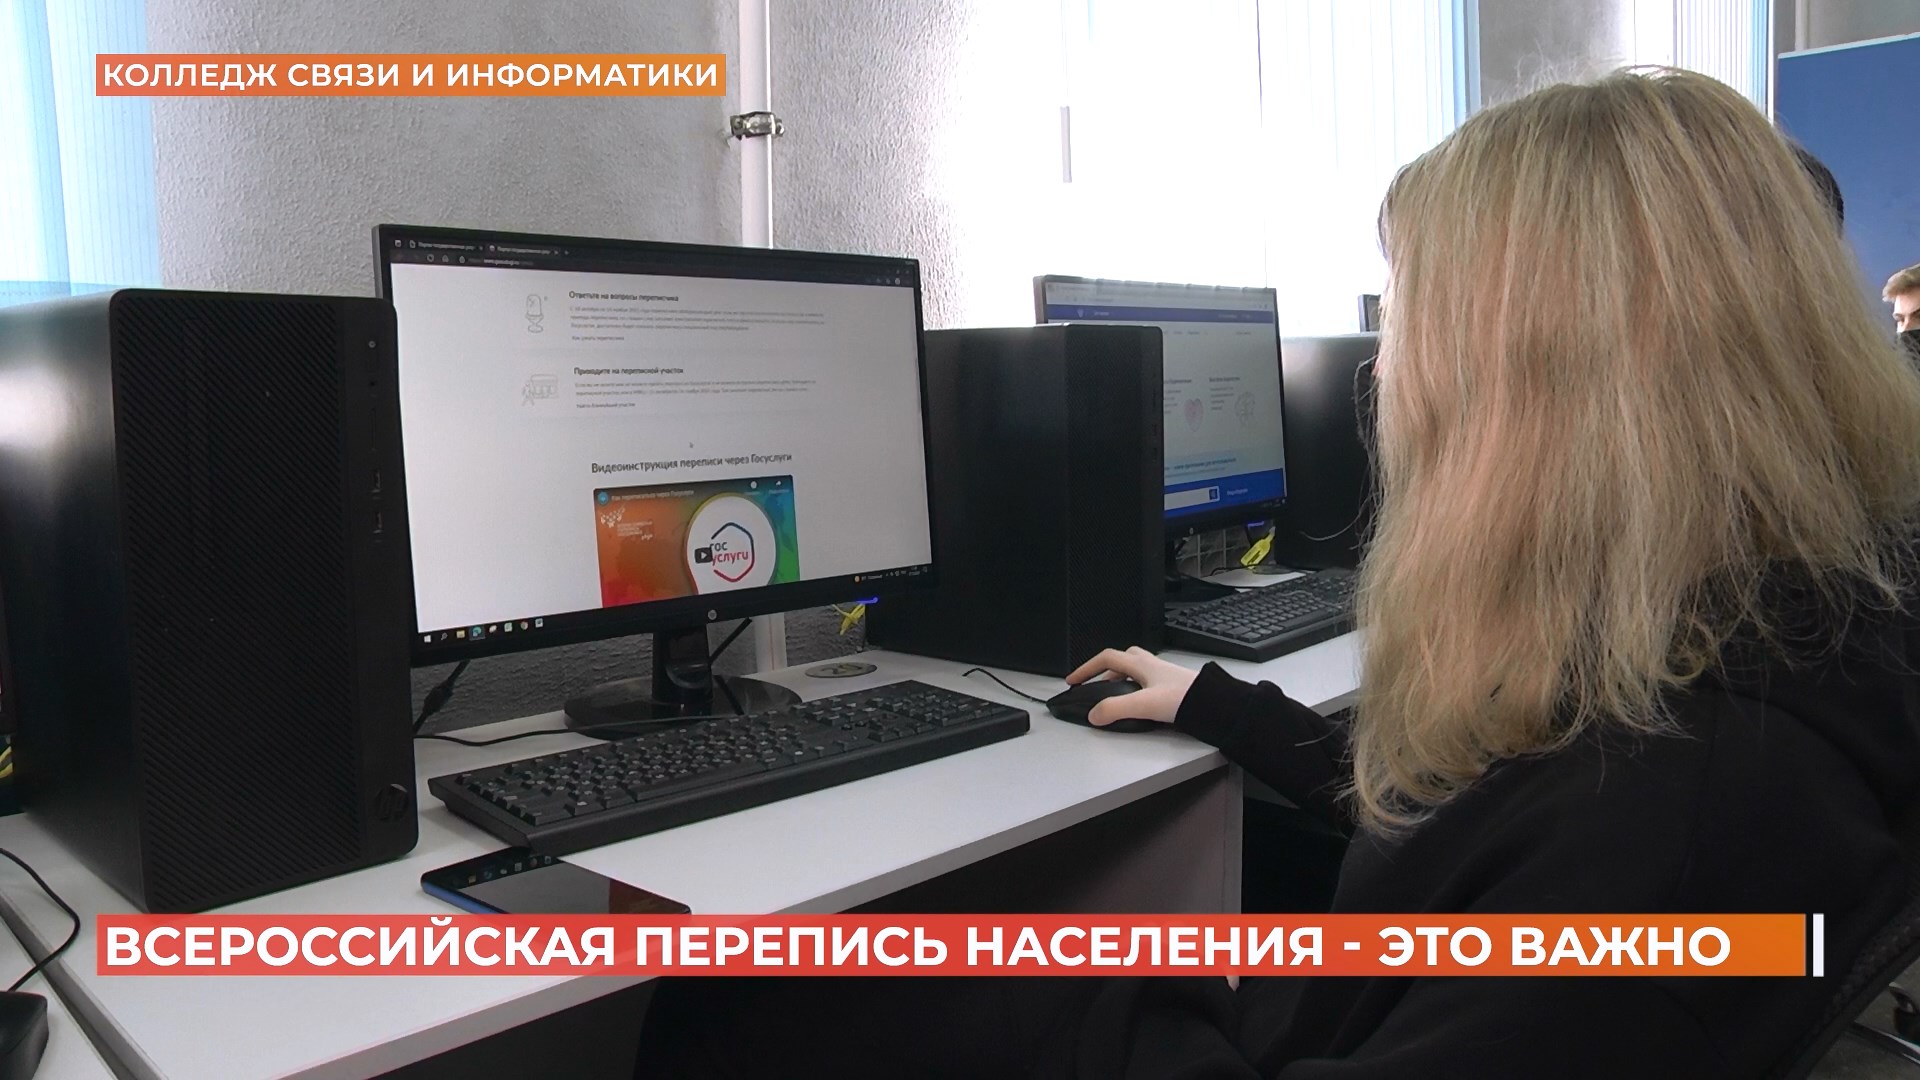 Больше 400 тысяч жителей нашей области уже прошли Всероссийскую перепись населения онлайн